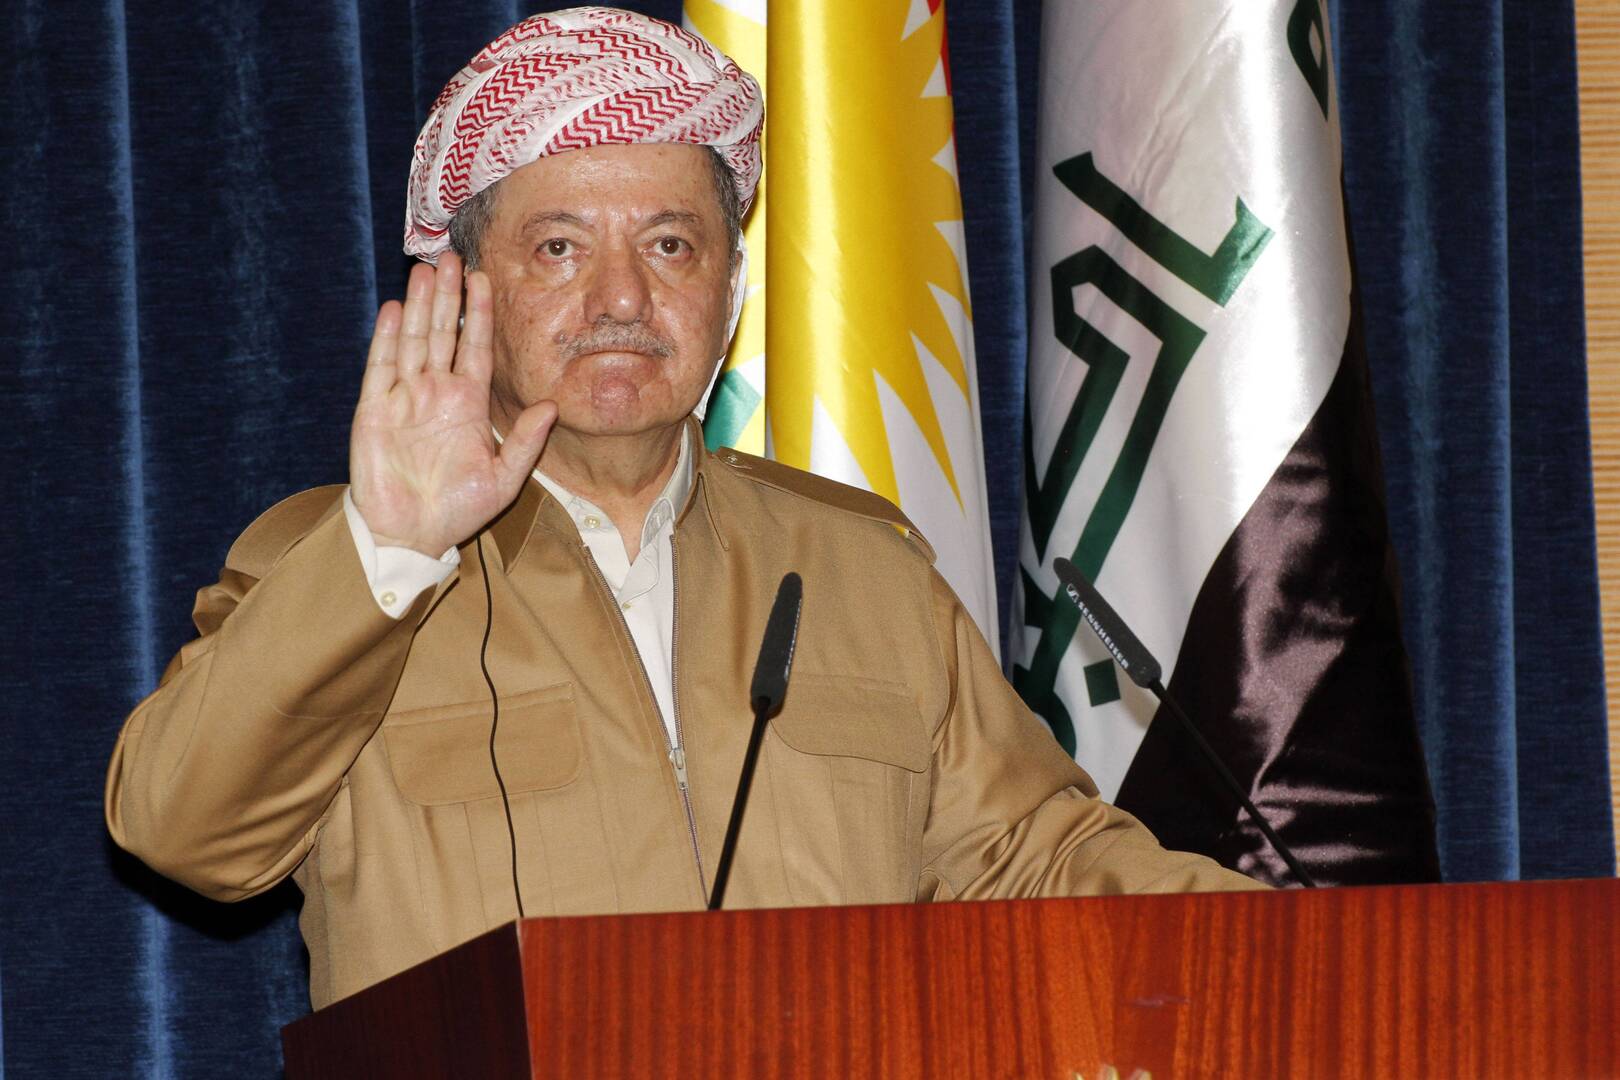 زعيم الحرب الدميقراطي الكردستاني في العراق، مسعود بارزاني